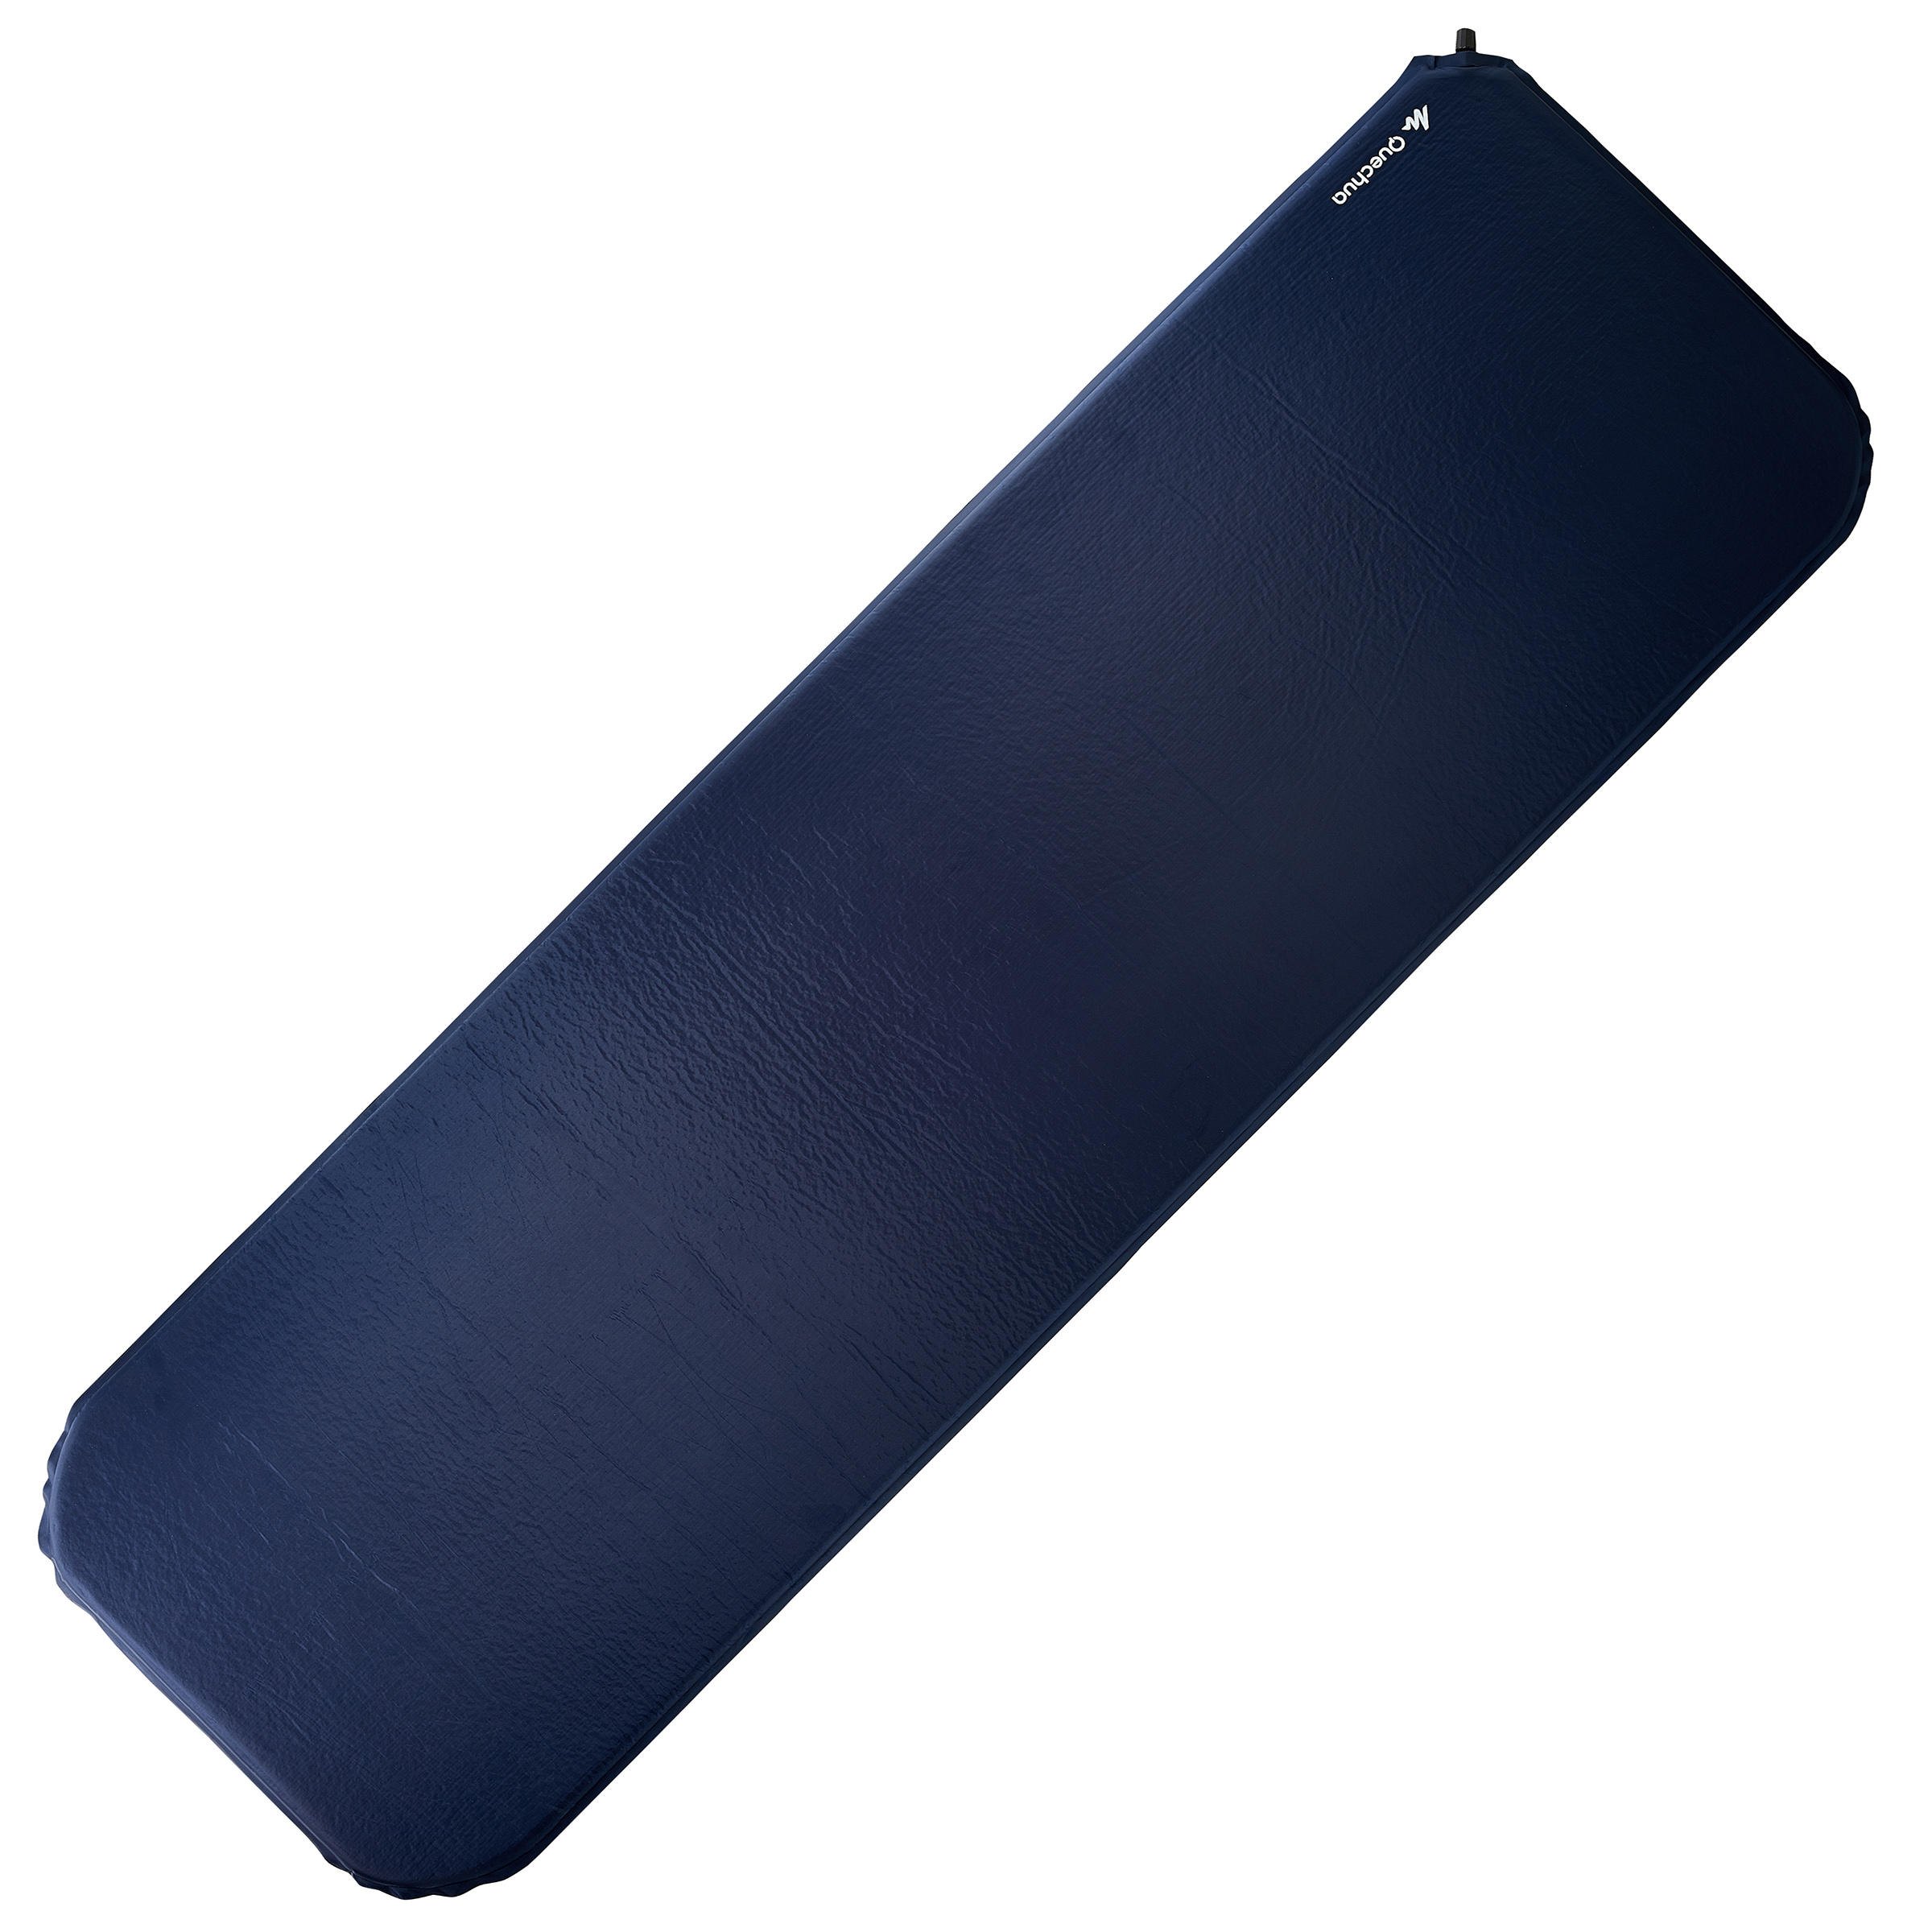 decathlon camping mattress